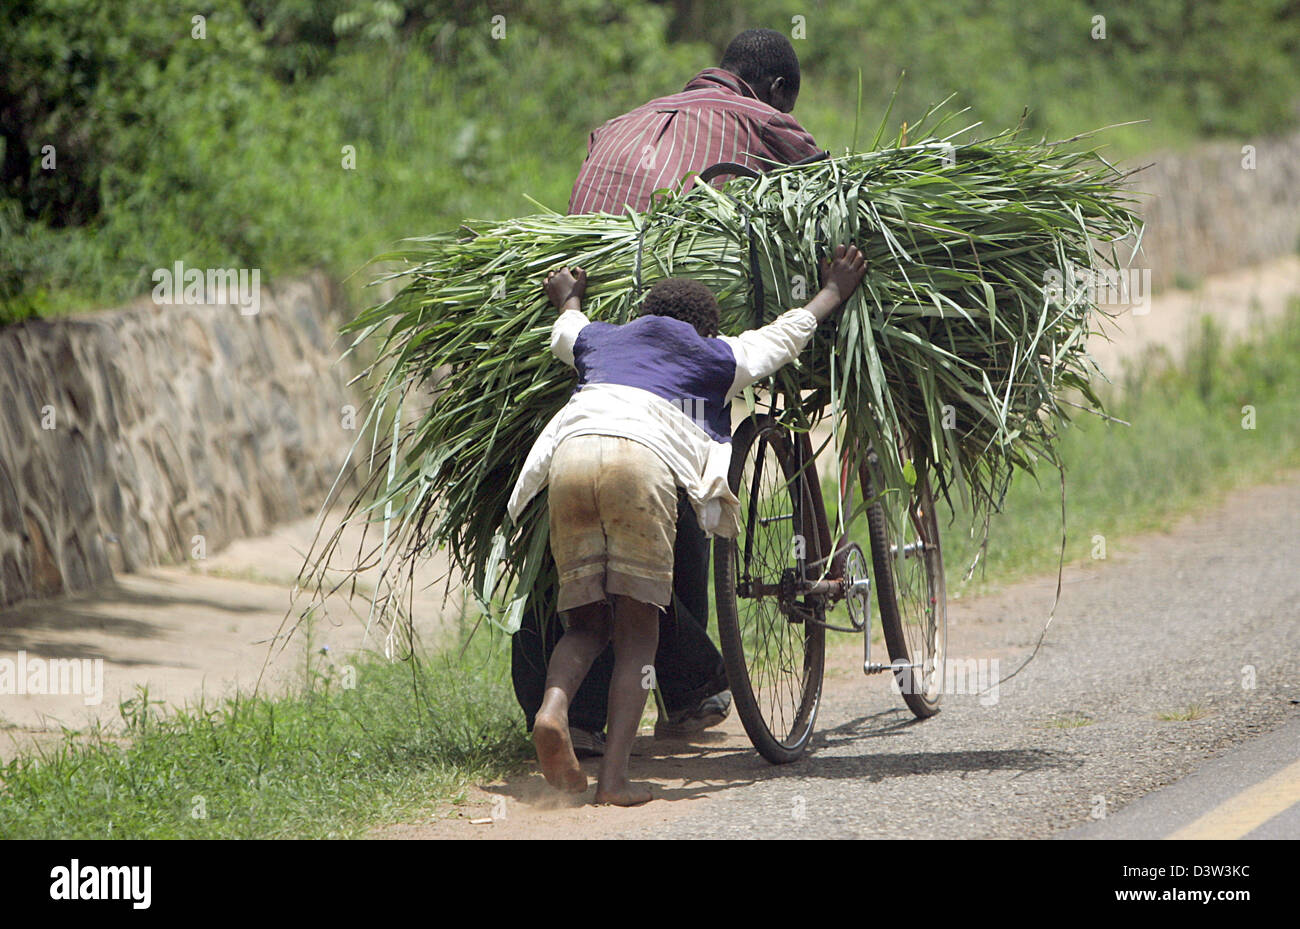 (Dpa) file - un uomo e una donna di trasportare un pesante bundel delle malerbe su una bicicletta nei pressi del villaggio di Njale nella provincia di Mphuka, Malawi, 29 novembre 2006. Foto: Frank può Foto Stock